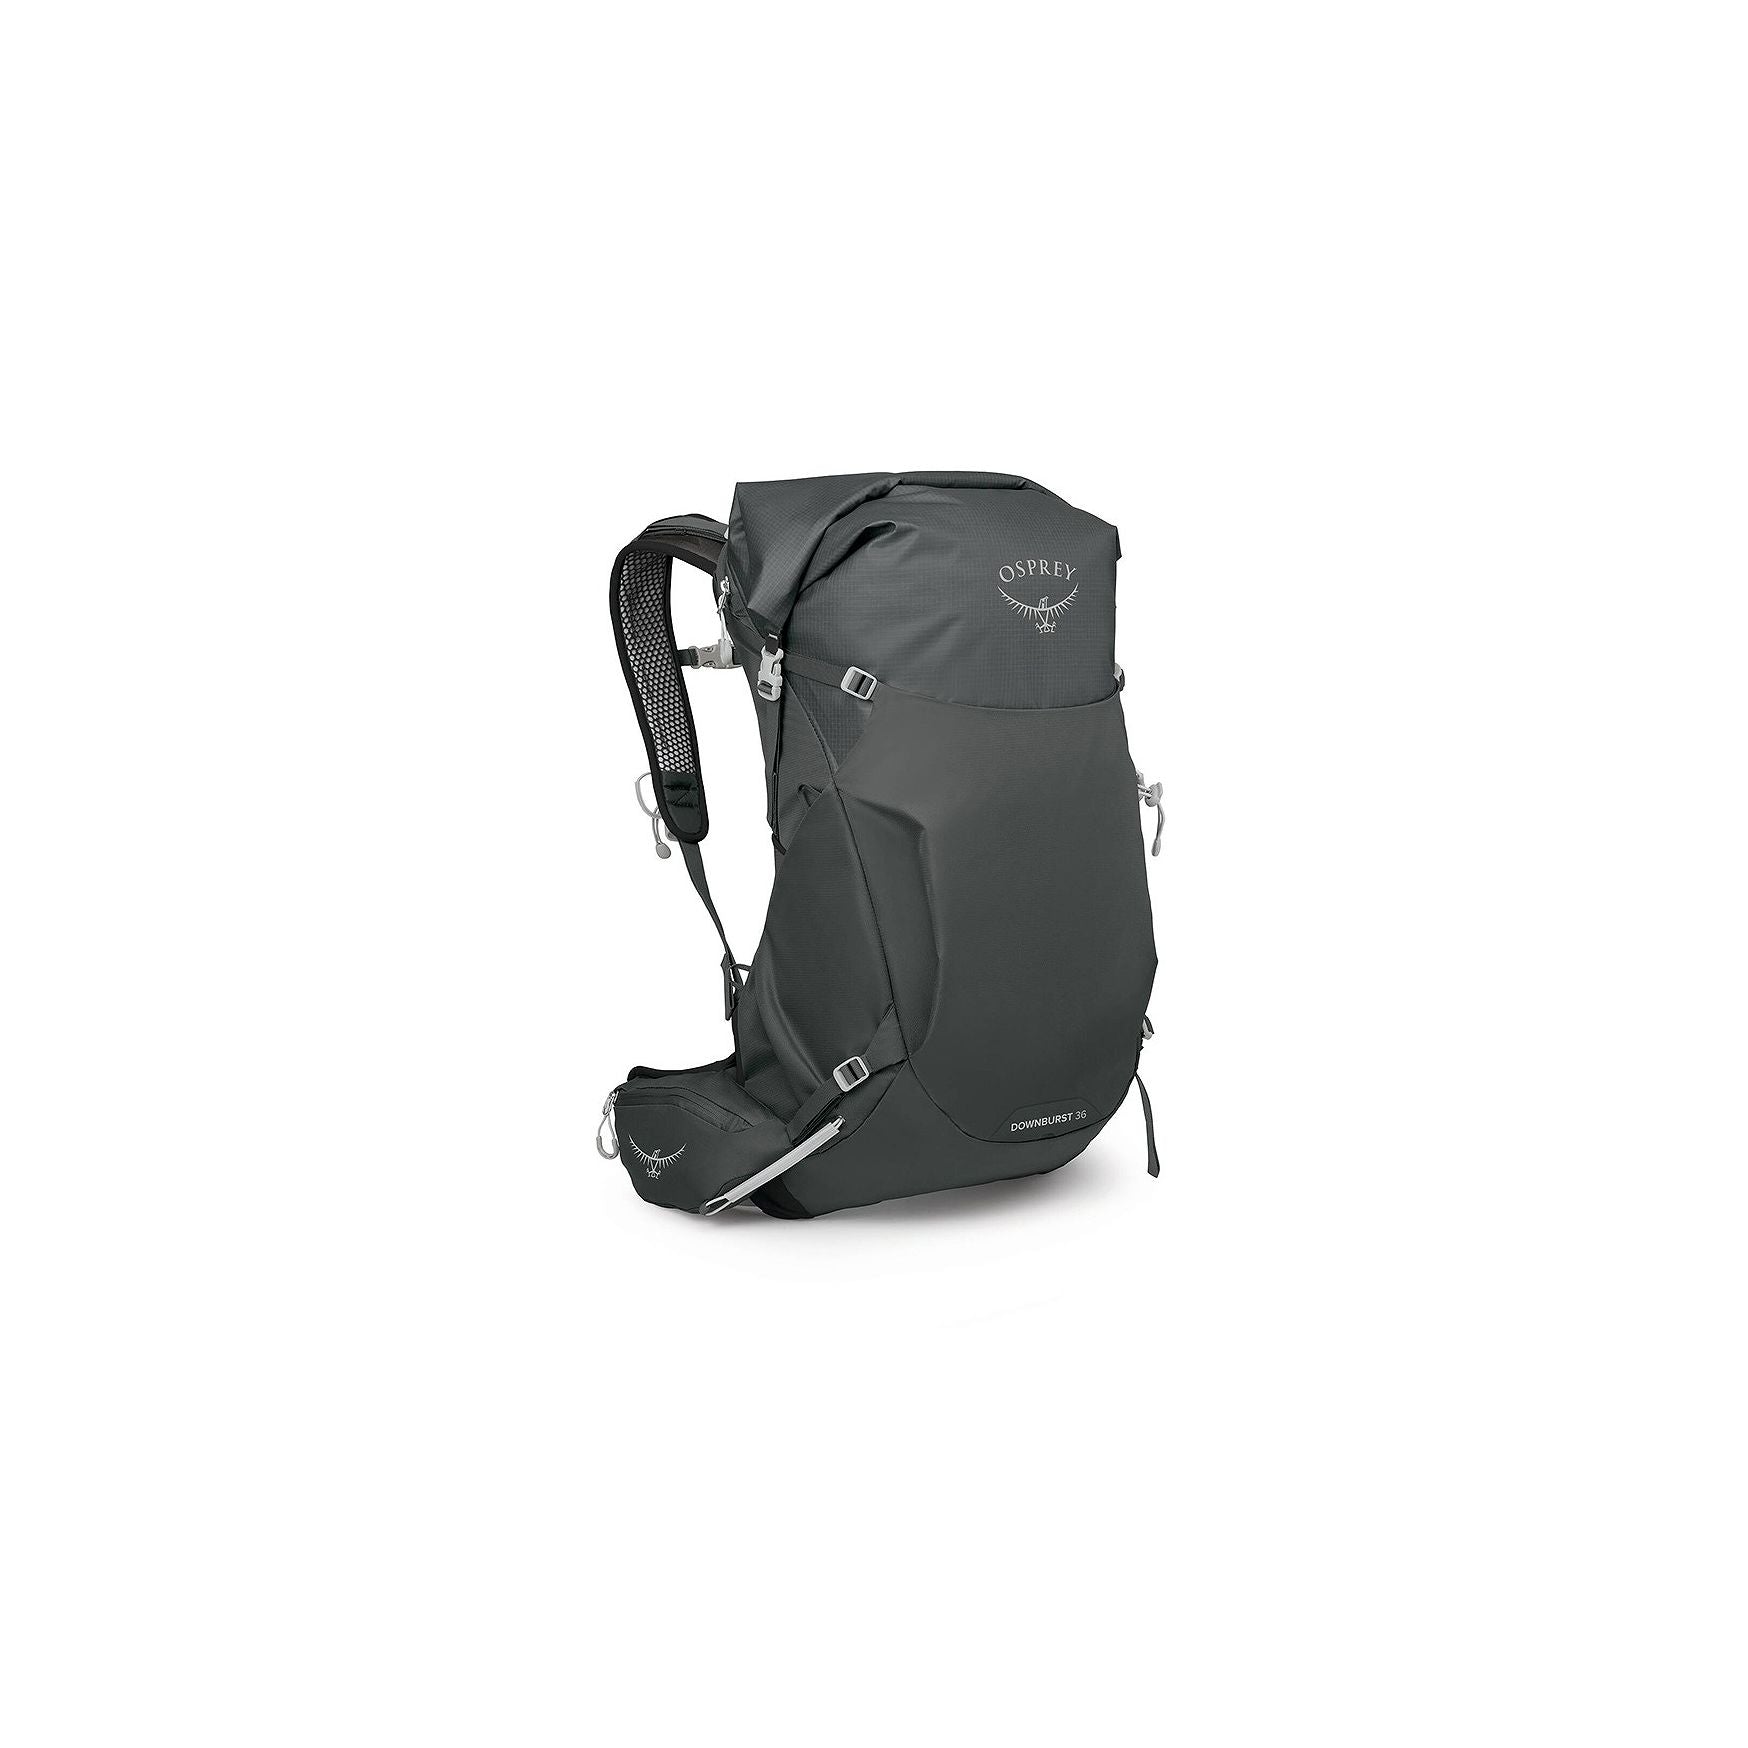 Osprey Men's Downburst 36 Water Resistant Backpack